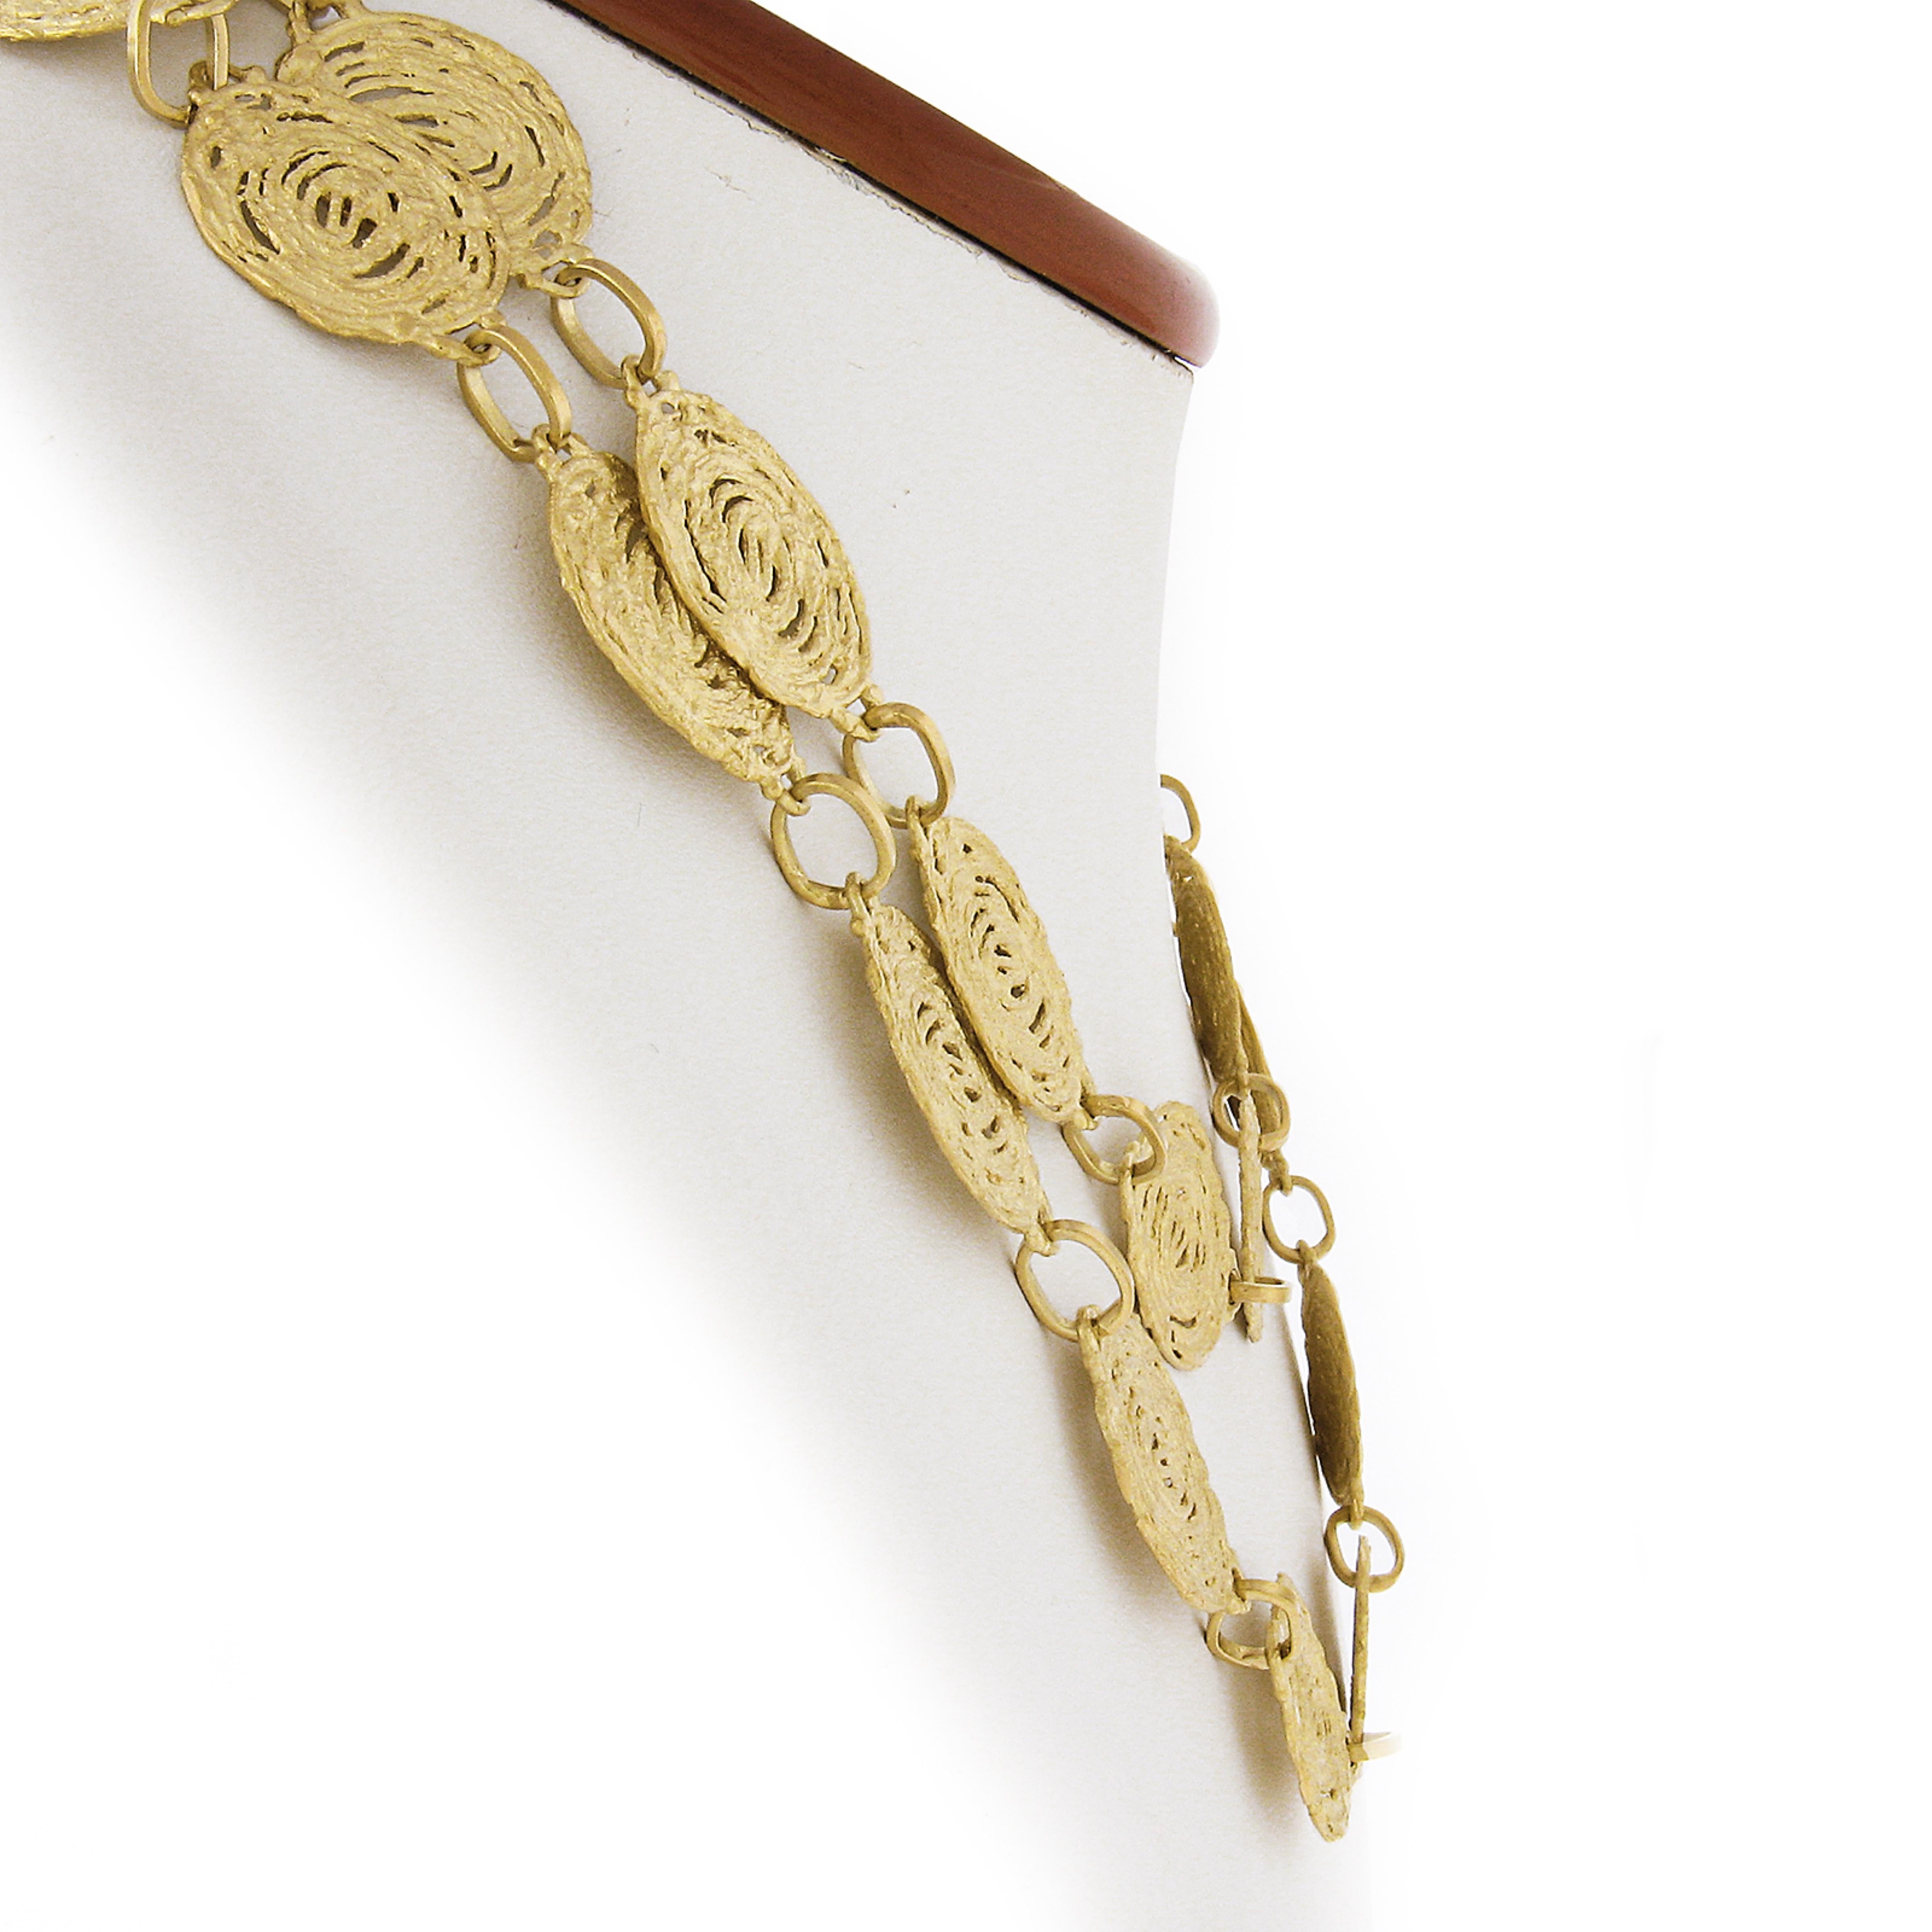 Ce long collier très inhabituel est très bien réalisé en Italie en or jaune massif 18 carats. Son design présente une forme unique de lien tourbillonnant libre qui ressemble presque à une impression de souche d'arbre avec des finitions doubles.